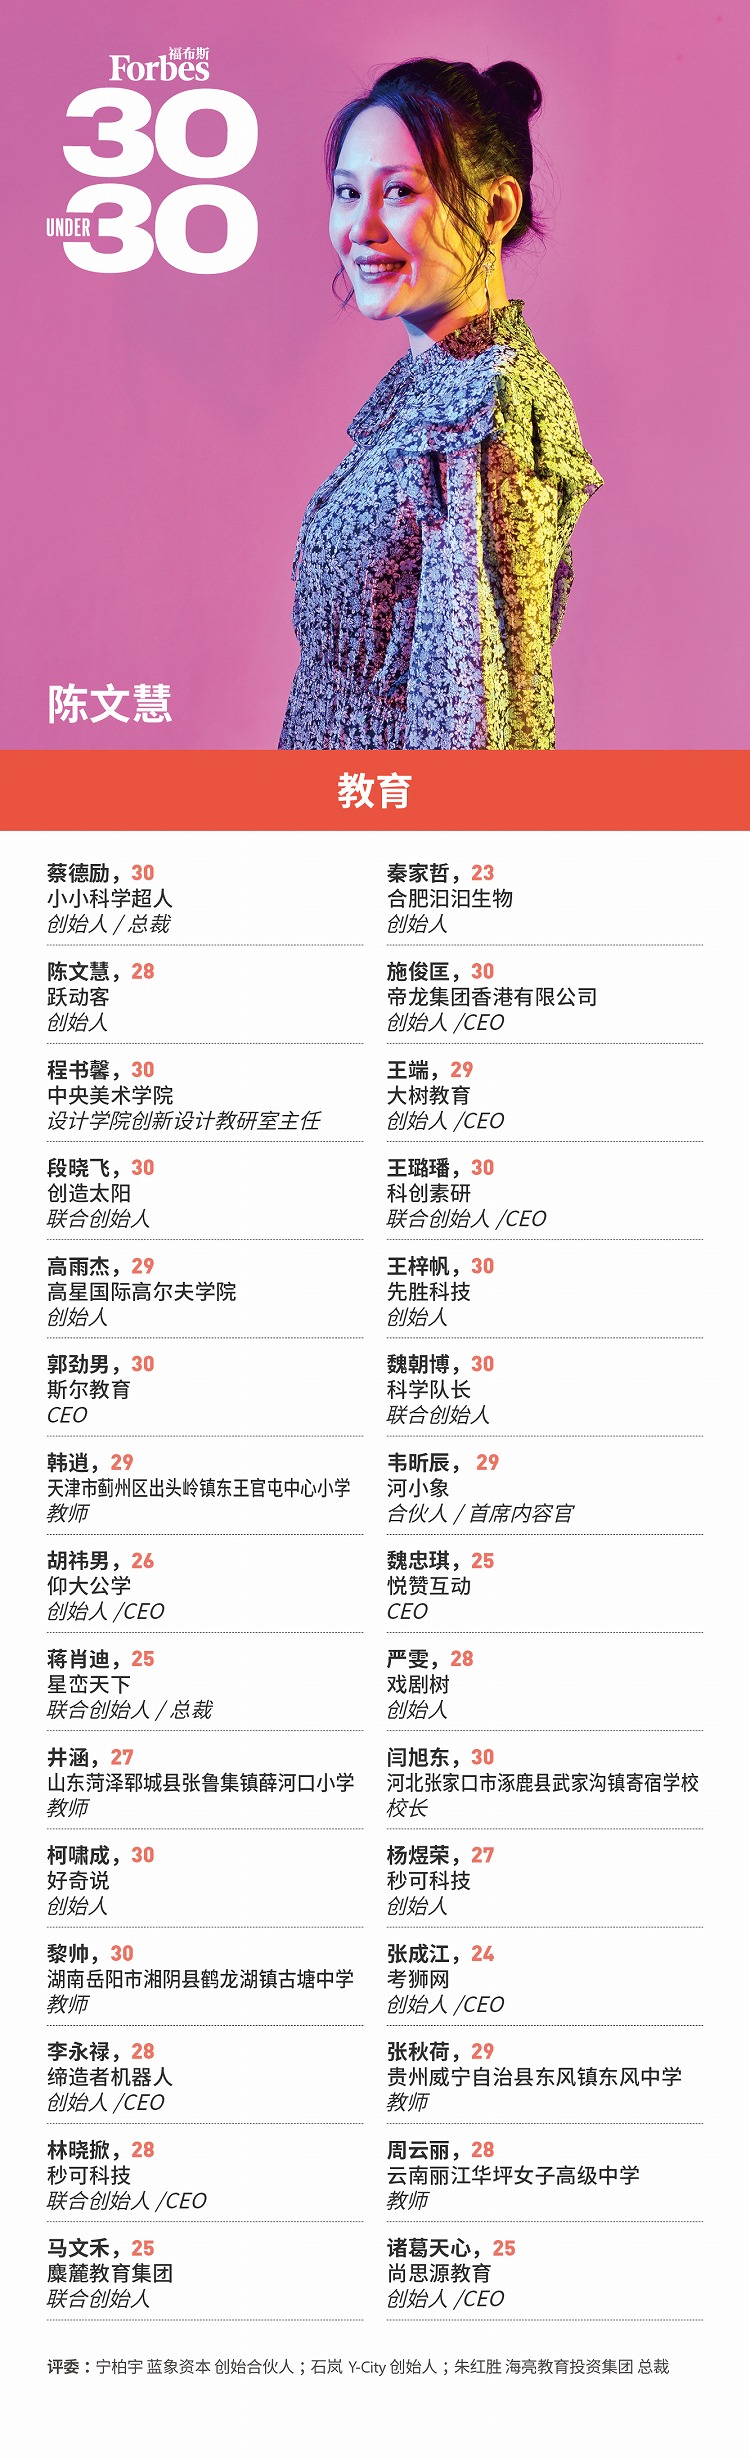 福布斯中国发布2021年度30 Under 30榜单